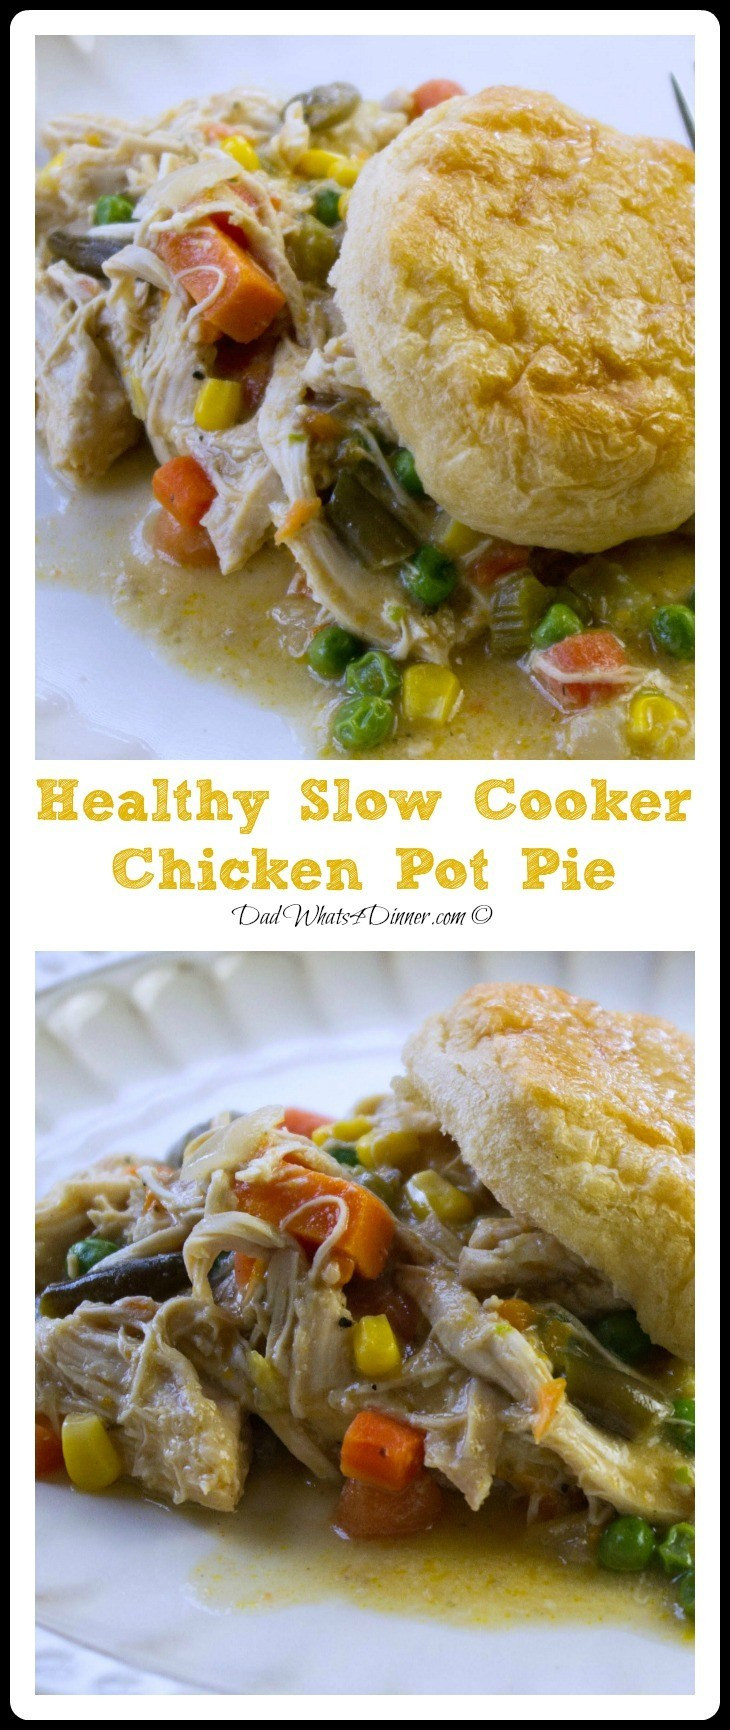 Slow Cooker Chicken Pot Pie Healthy
 Healthy Slow Cooker Chicken Pot Pie